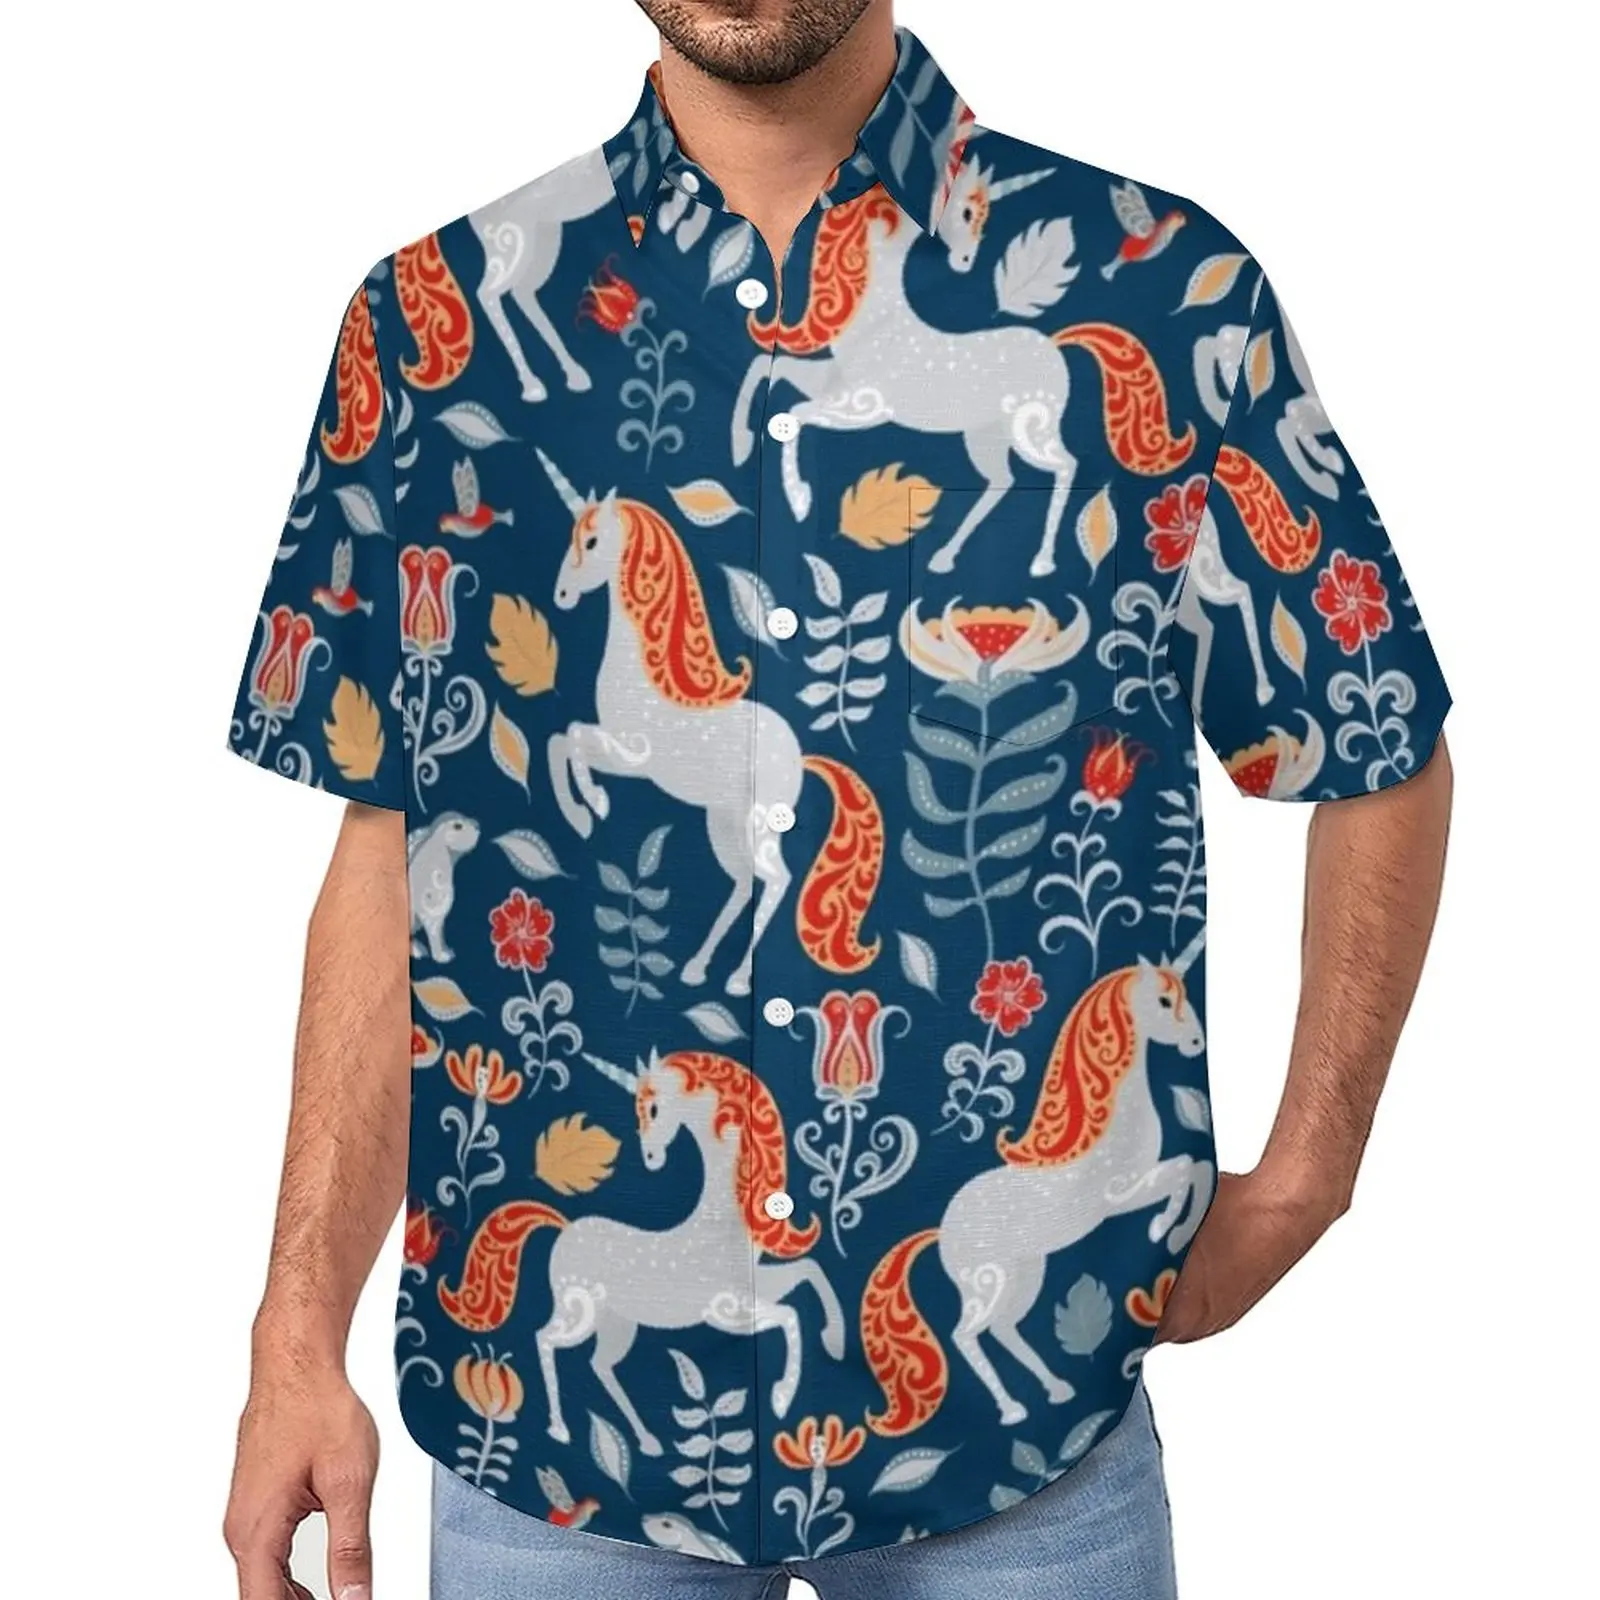 

Свободная рубашка с мультяшным рисунком лошади, пляжные повседневные рубашки с принтом единорогов, кроликов, птиц, цветов, гавайская Эстетическая блузка большого размера